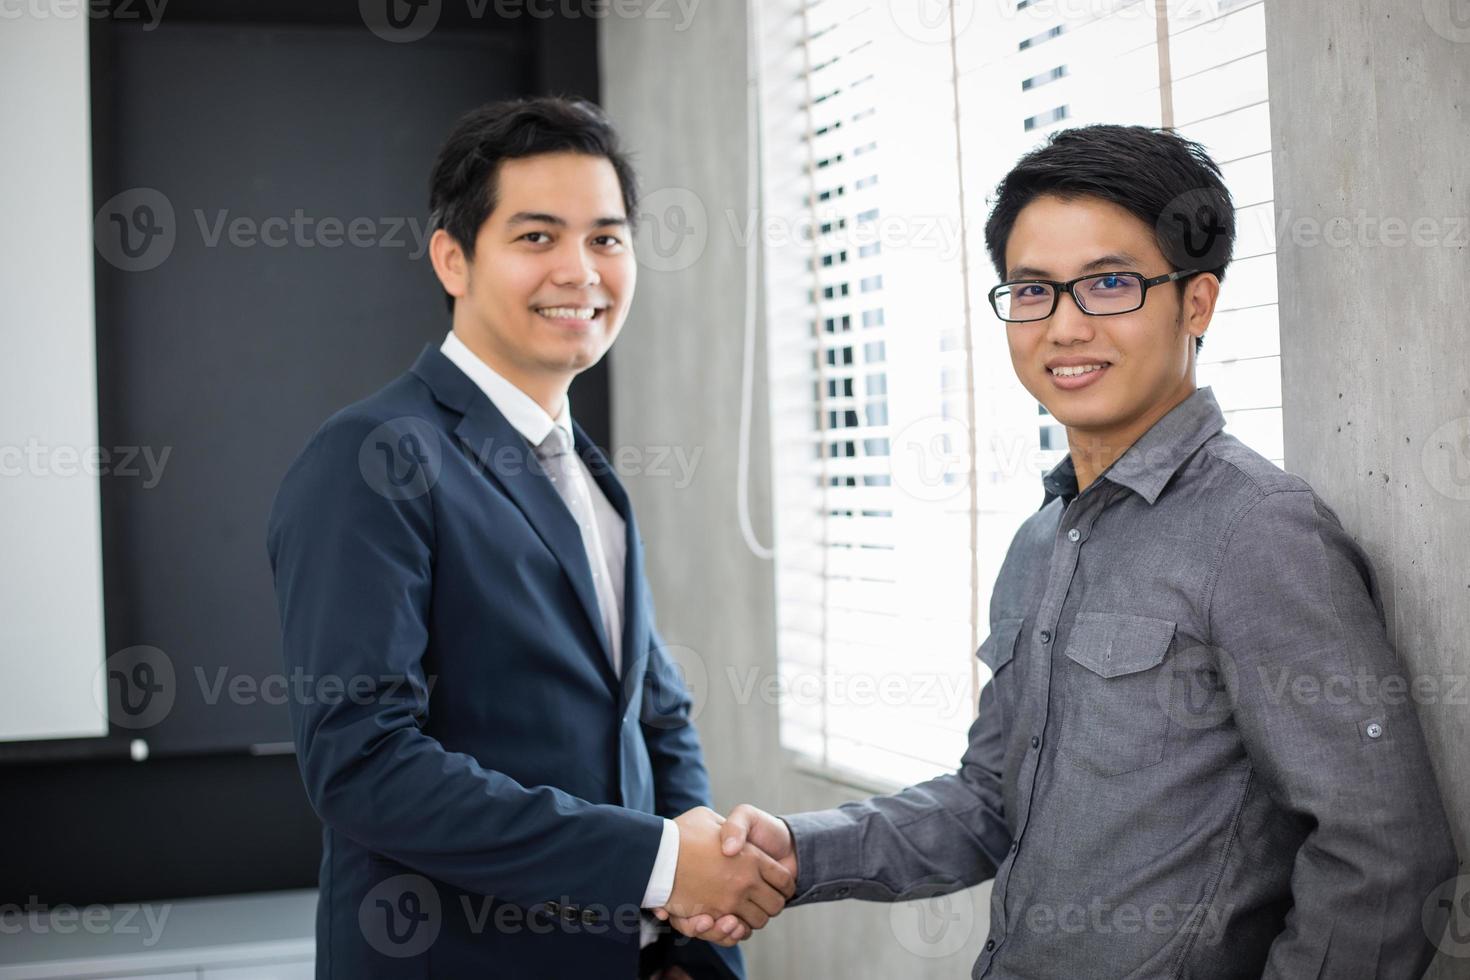 hommes d'affaires asiatiques se serrant la main et souriant leur accord pour signer un contrat et terminer une réunion photo